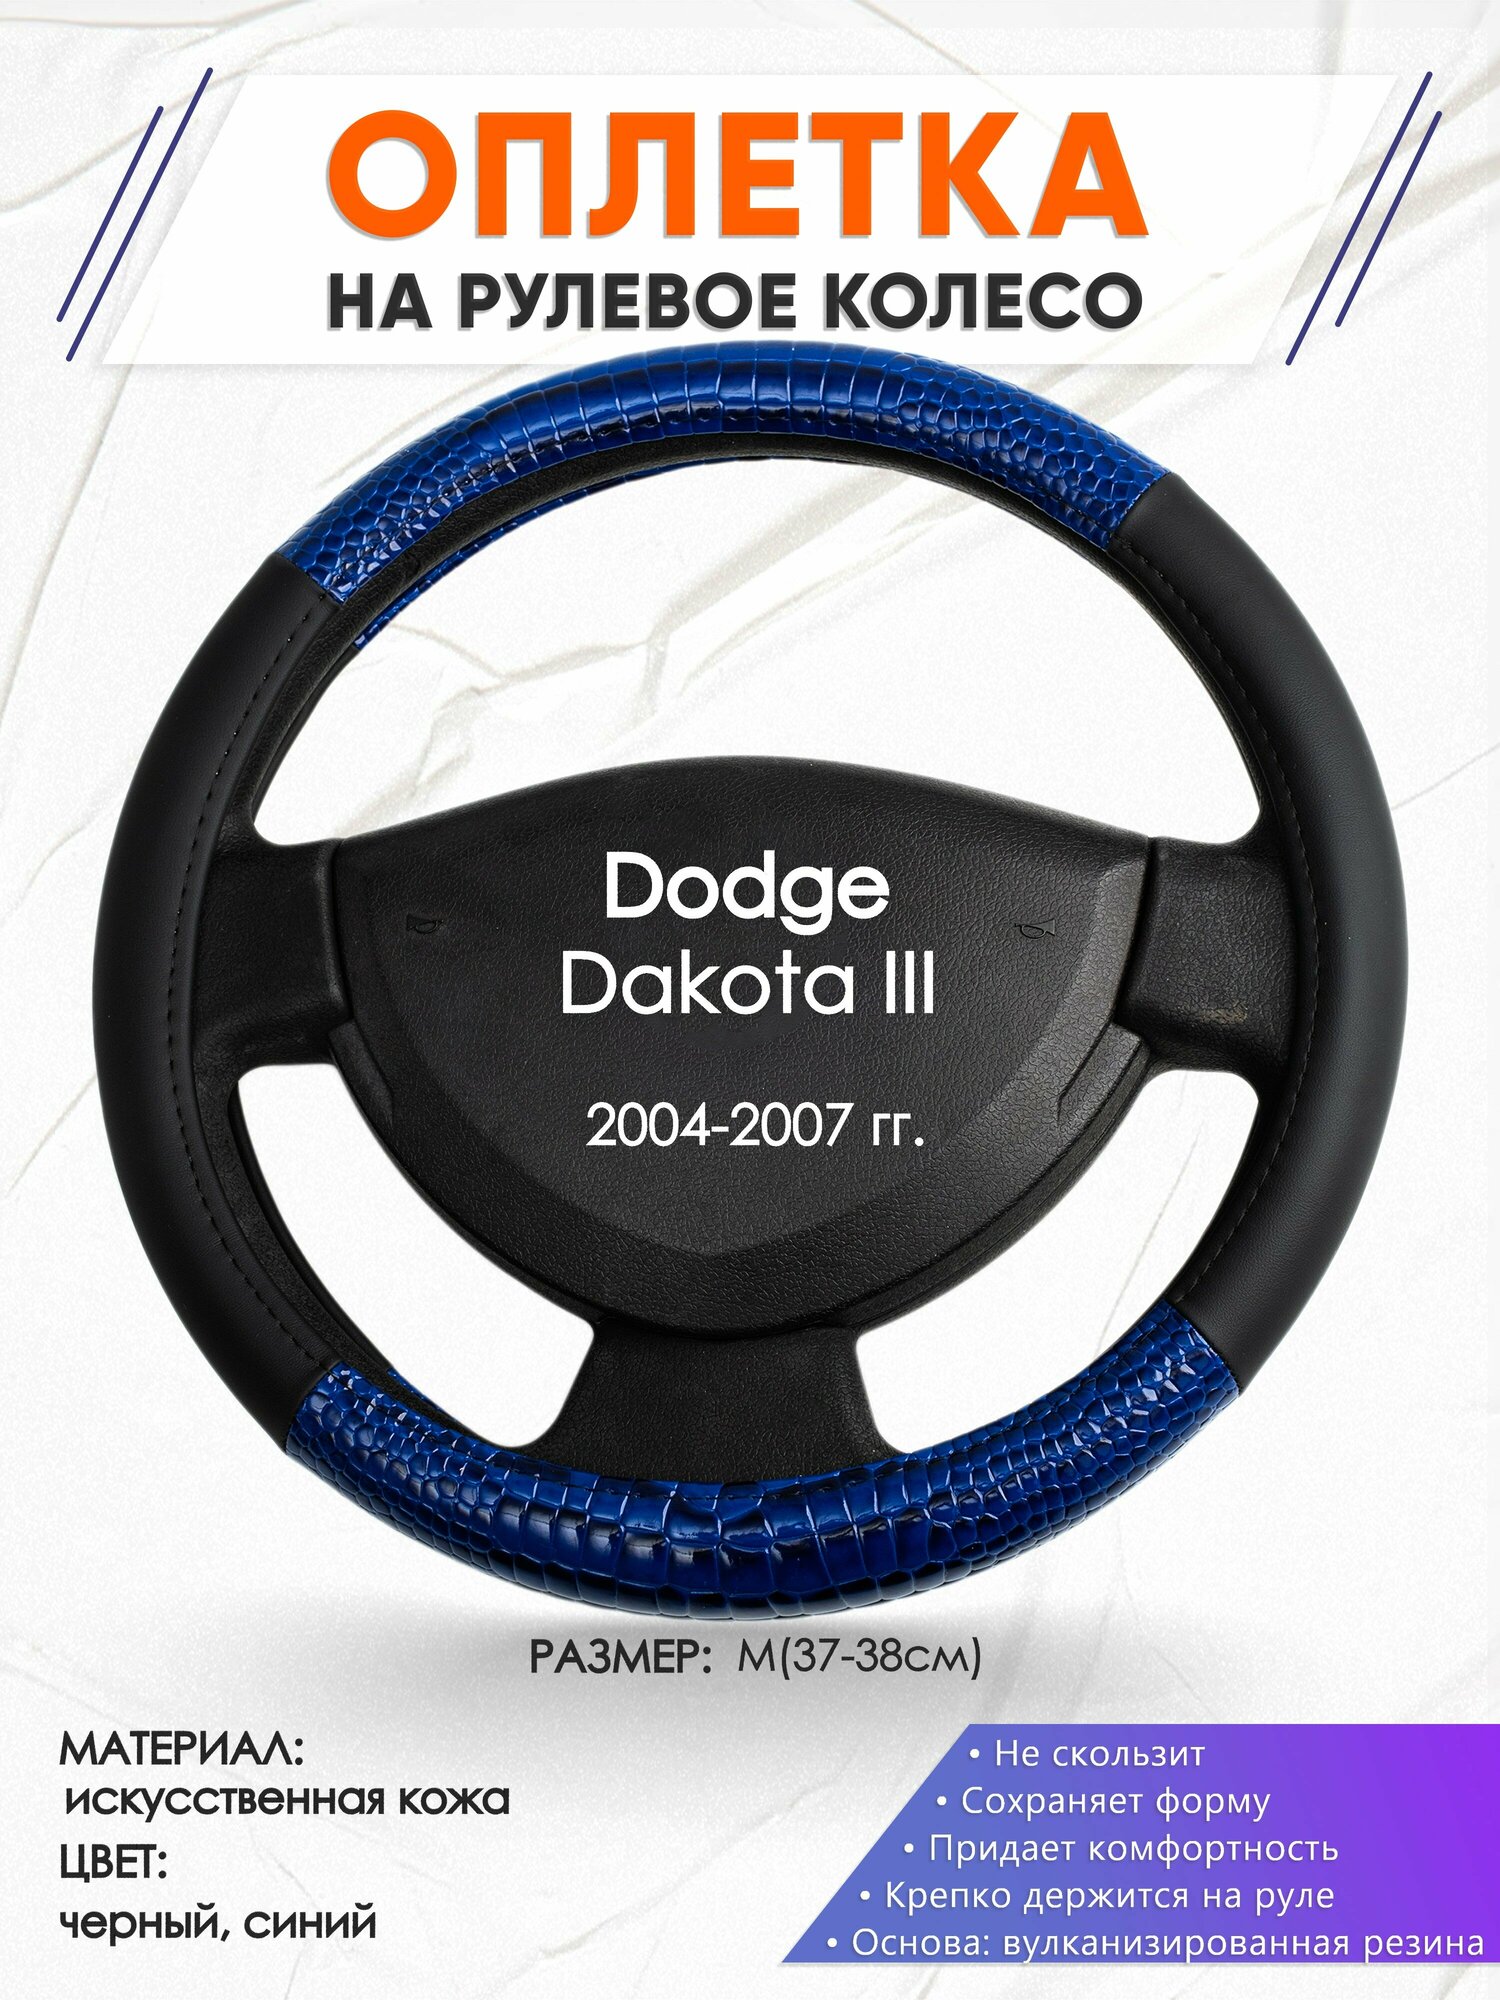 Оплетка наруль для Dodge Dakota 3(Додж Дакота 3) 2004-2007 годов выпуска, размер M(37-38см), Искусственная кожа 82